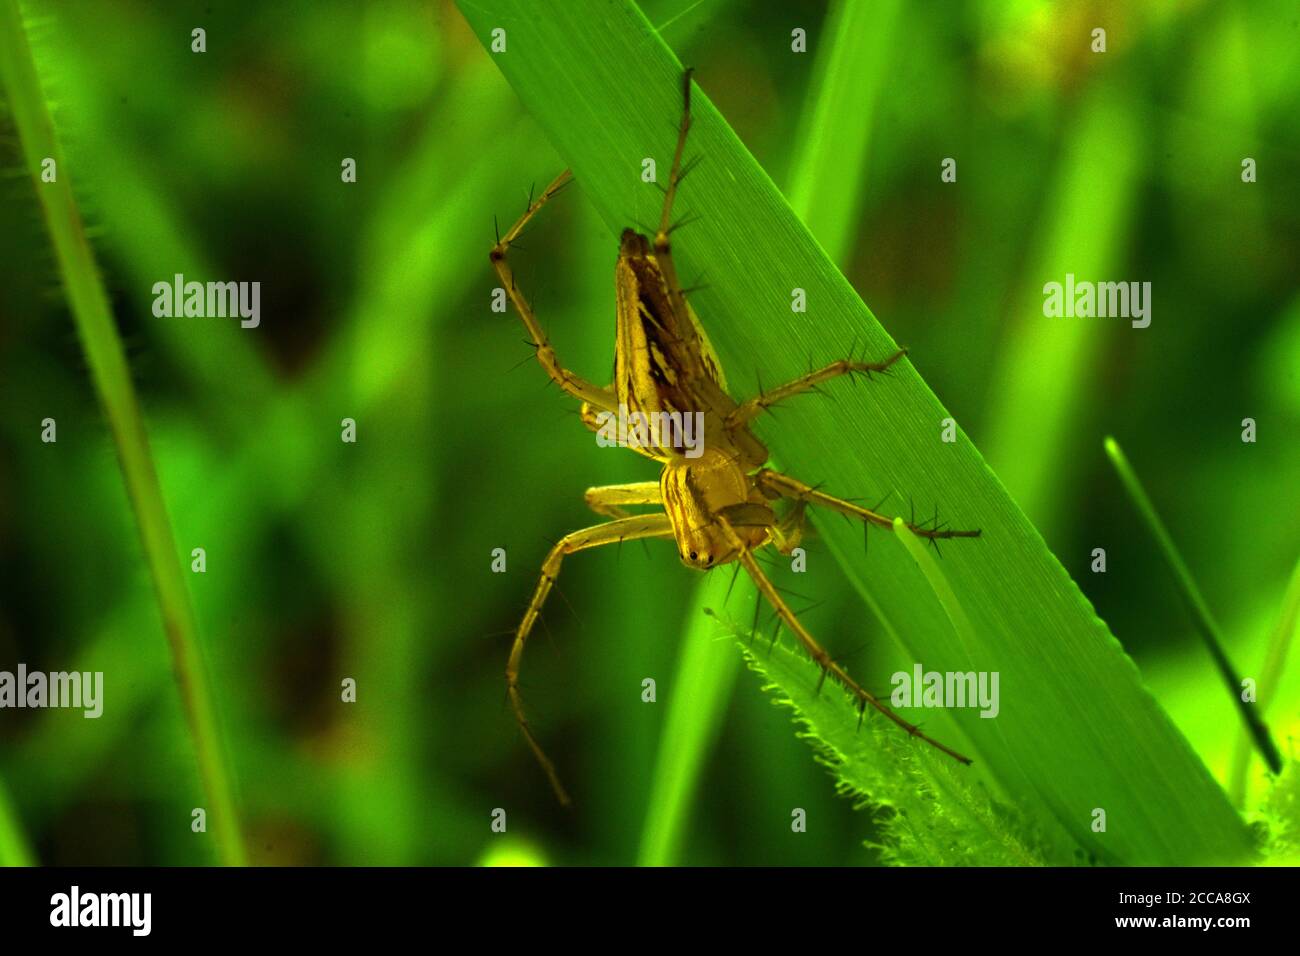 Une araignée de lynx (oxyopes javanus) rampant sur l'herbe verte. Banque D'Images